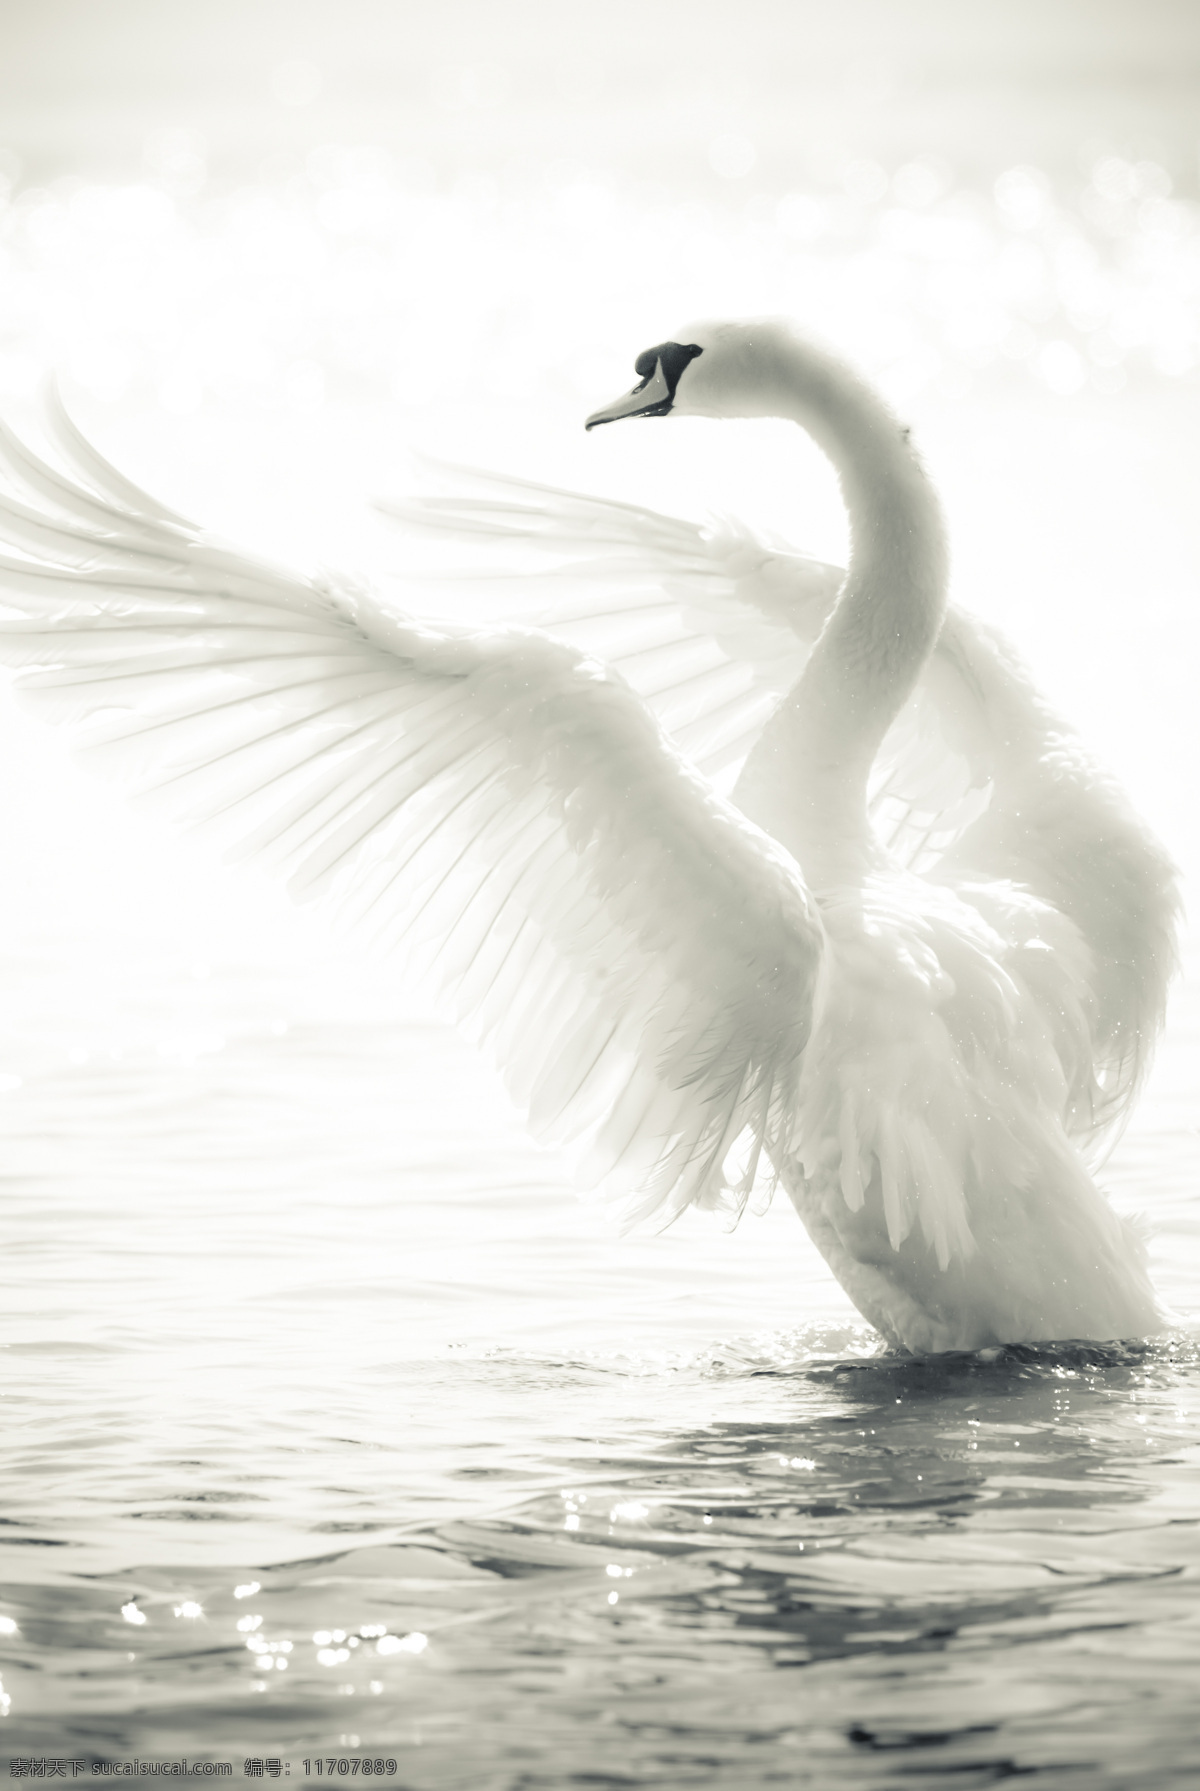 展开 翅膀 天鹅 高清 白天鹅 展开翅膀 野生动物 动物世界 美丽 摄影图 高清图片 水中生物 生物世界 白色